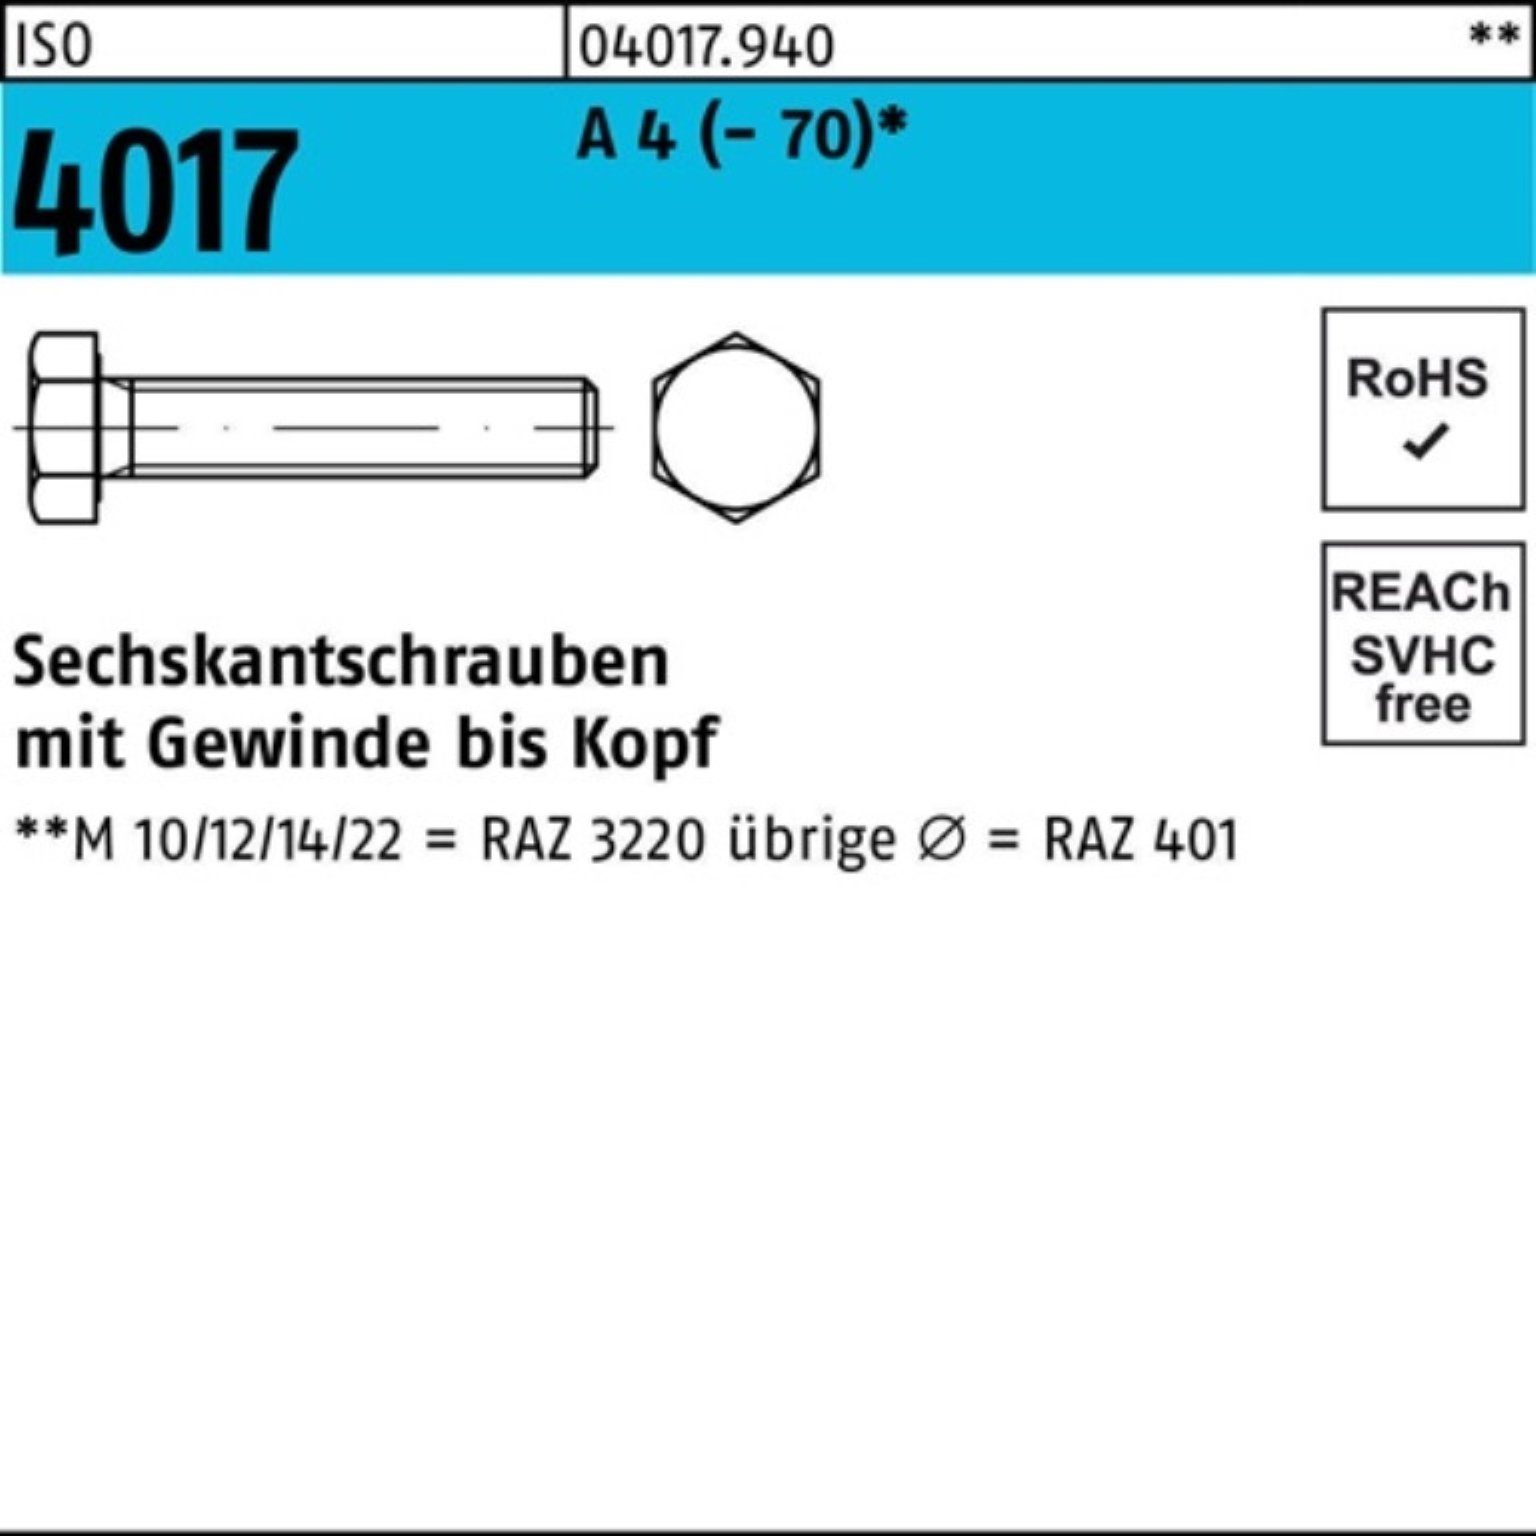 (70) 50 Sechskantschraube A M14x 4 4017 Bufab ISO Stück Pack Sechskantschraube 50 100er VG